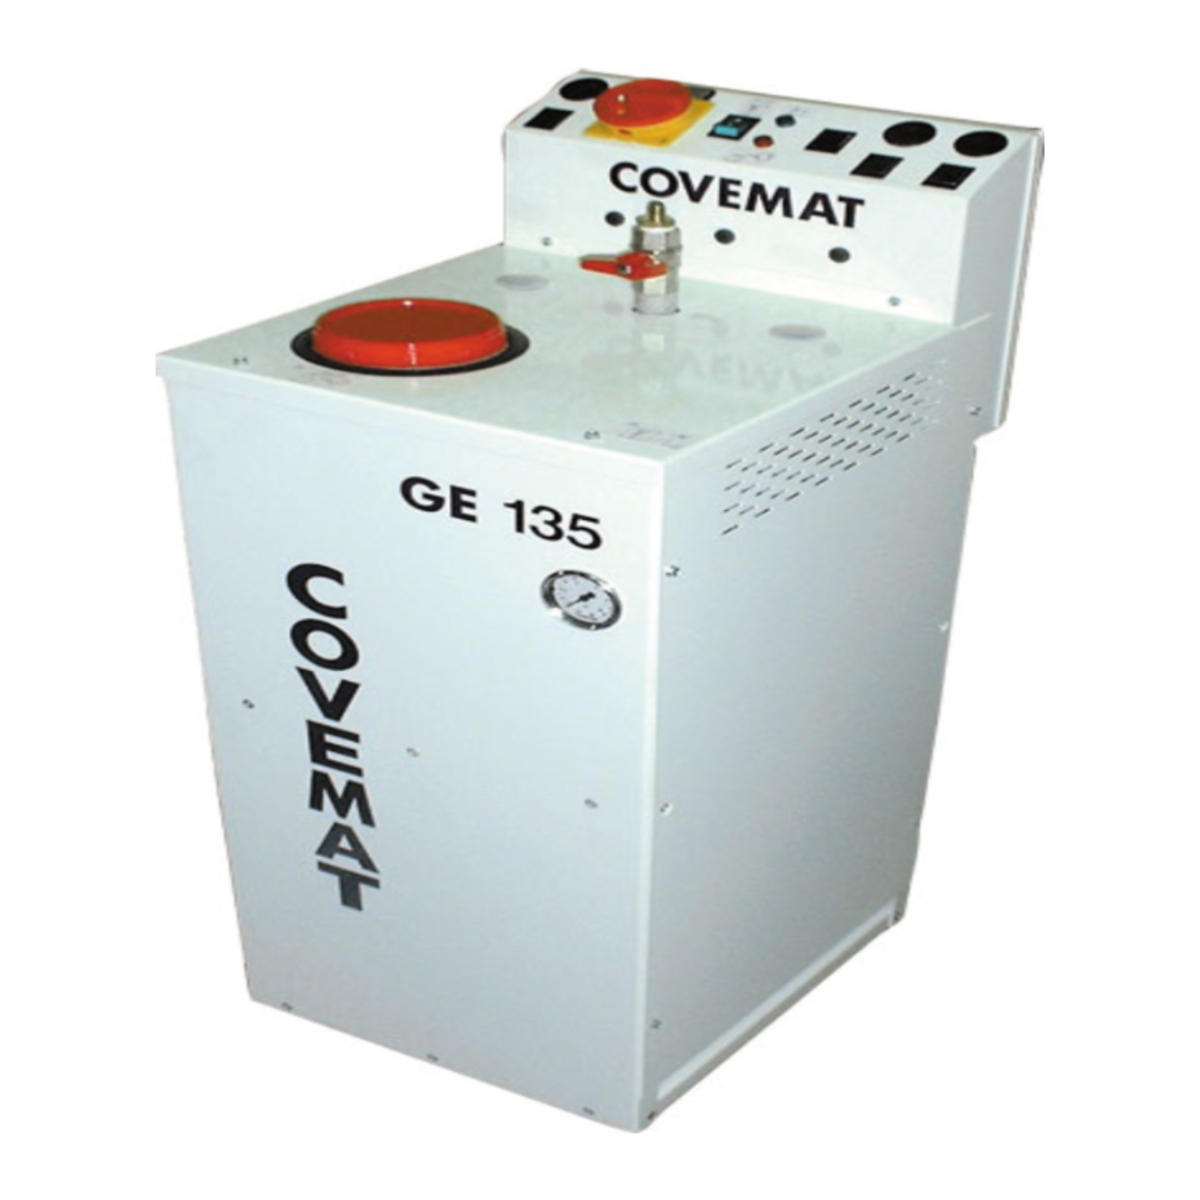 Générateur vapeur électrique à remplissage semi-automatique sans fer, Puissance 3.5 kW - GE 135 - Covemat_0